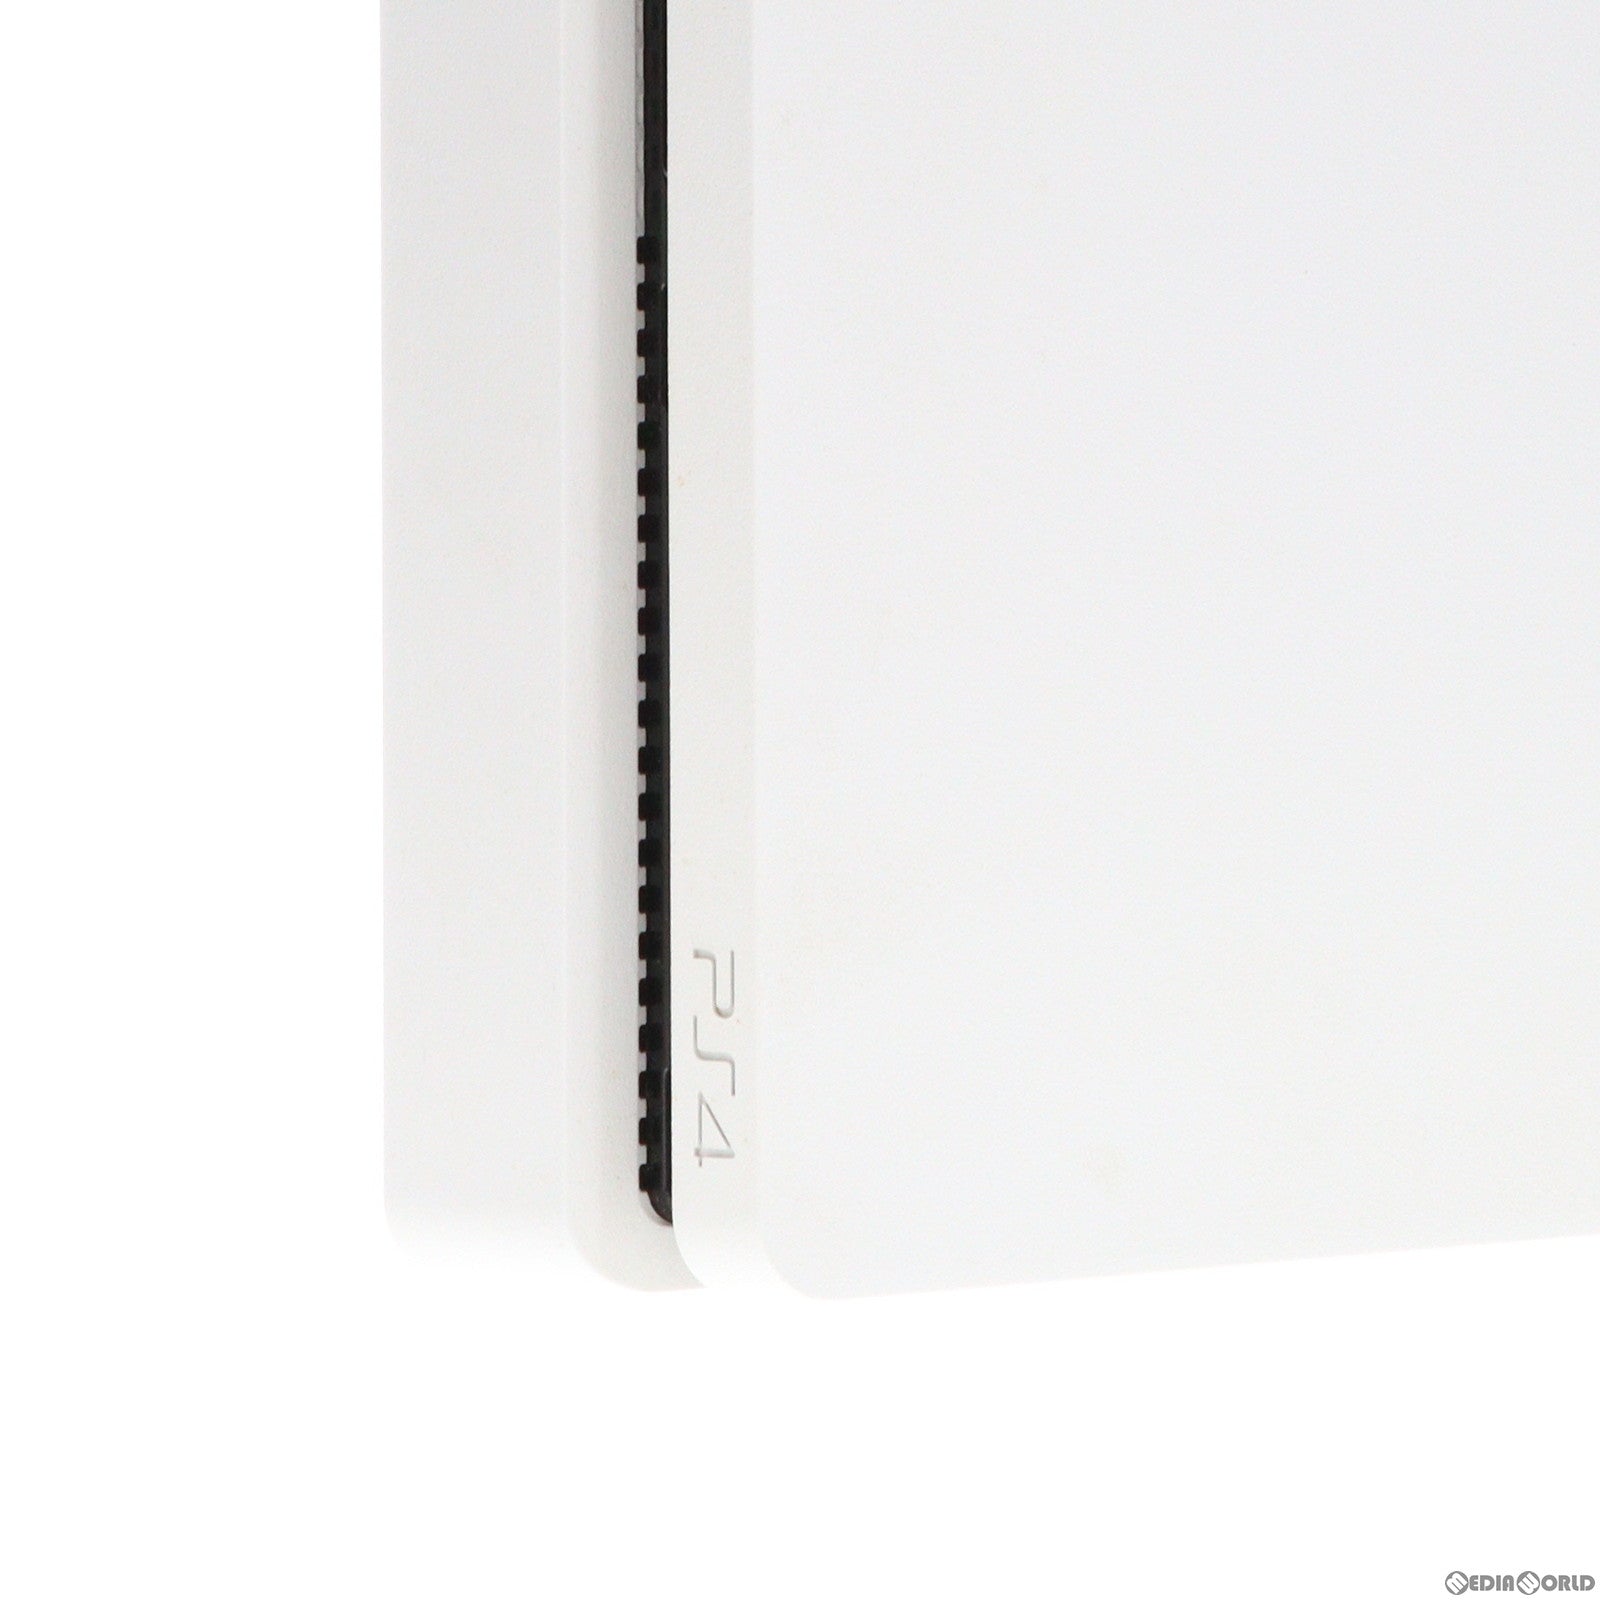 【中古即納】[本体][PS4]プレイステーション4 PlayStation4 グレイシャー・ホワイト 500GB(CUH-2200AB02)(20180816)